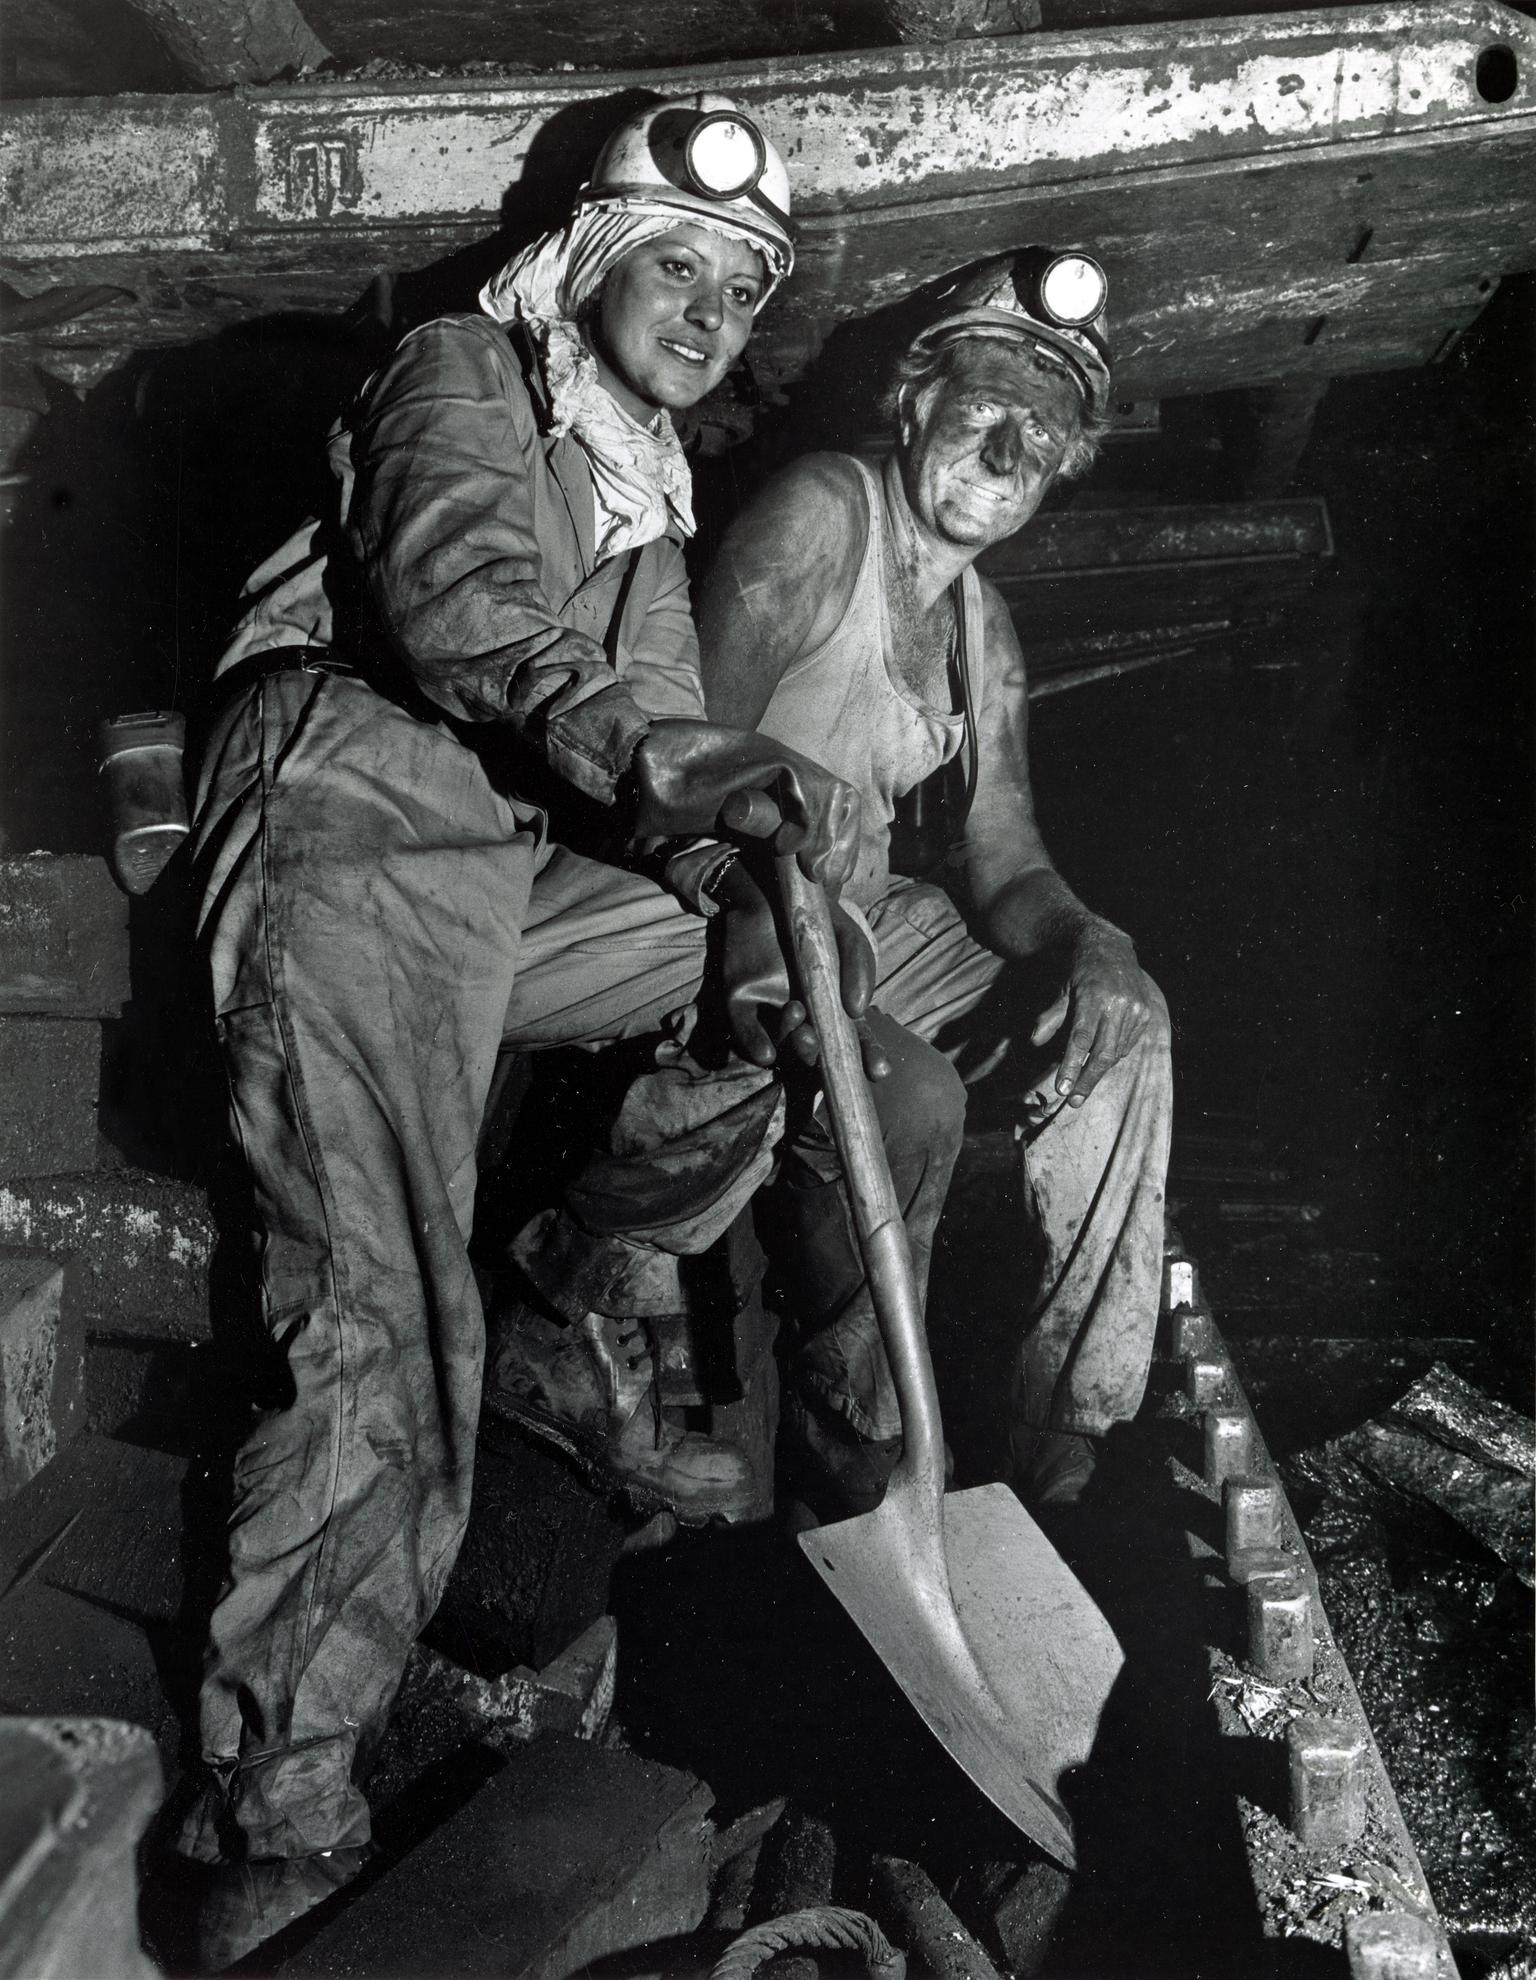 Coal Queen visiting Britannia Colliery, photograph